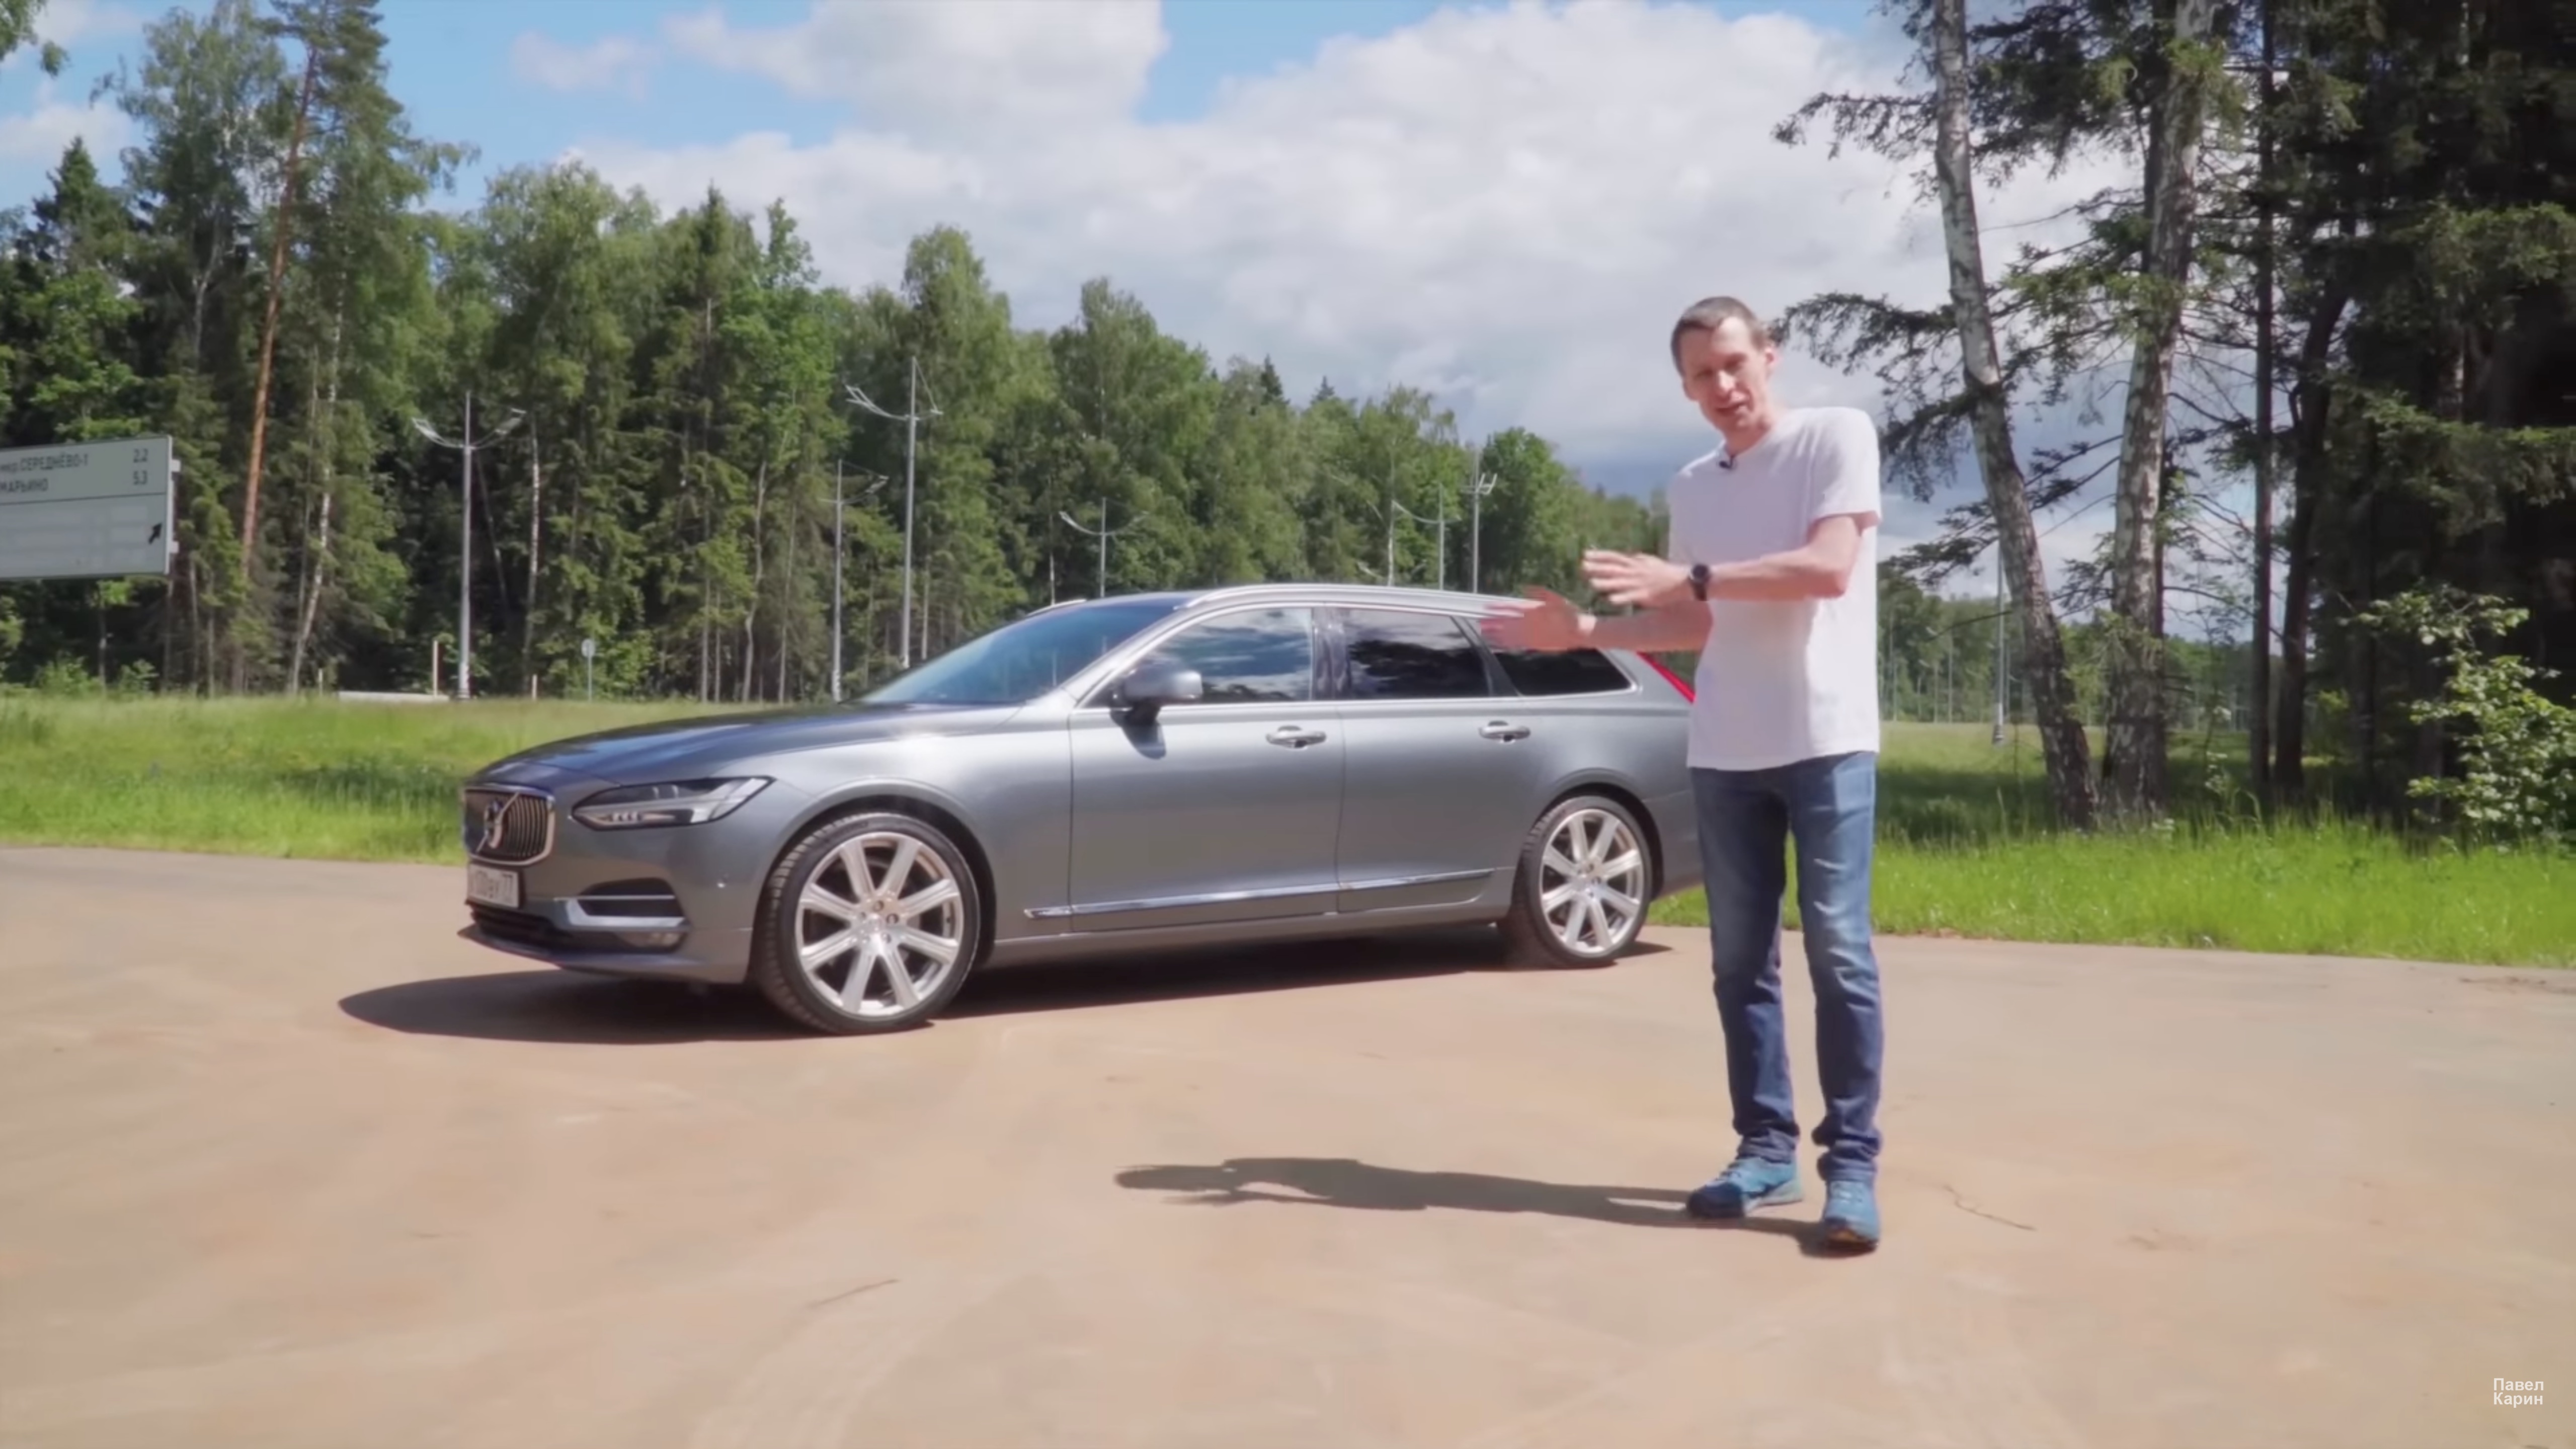 Анонс видео-теста Volvo V90 из Германии. Чем грозит льготная растаможка